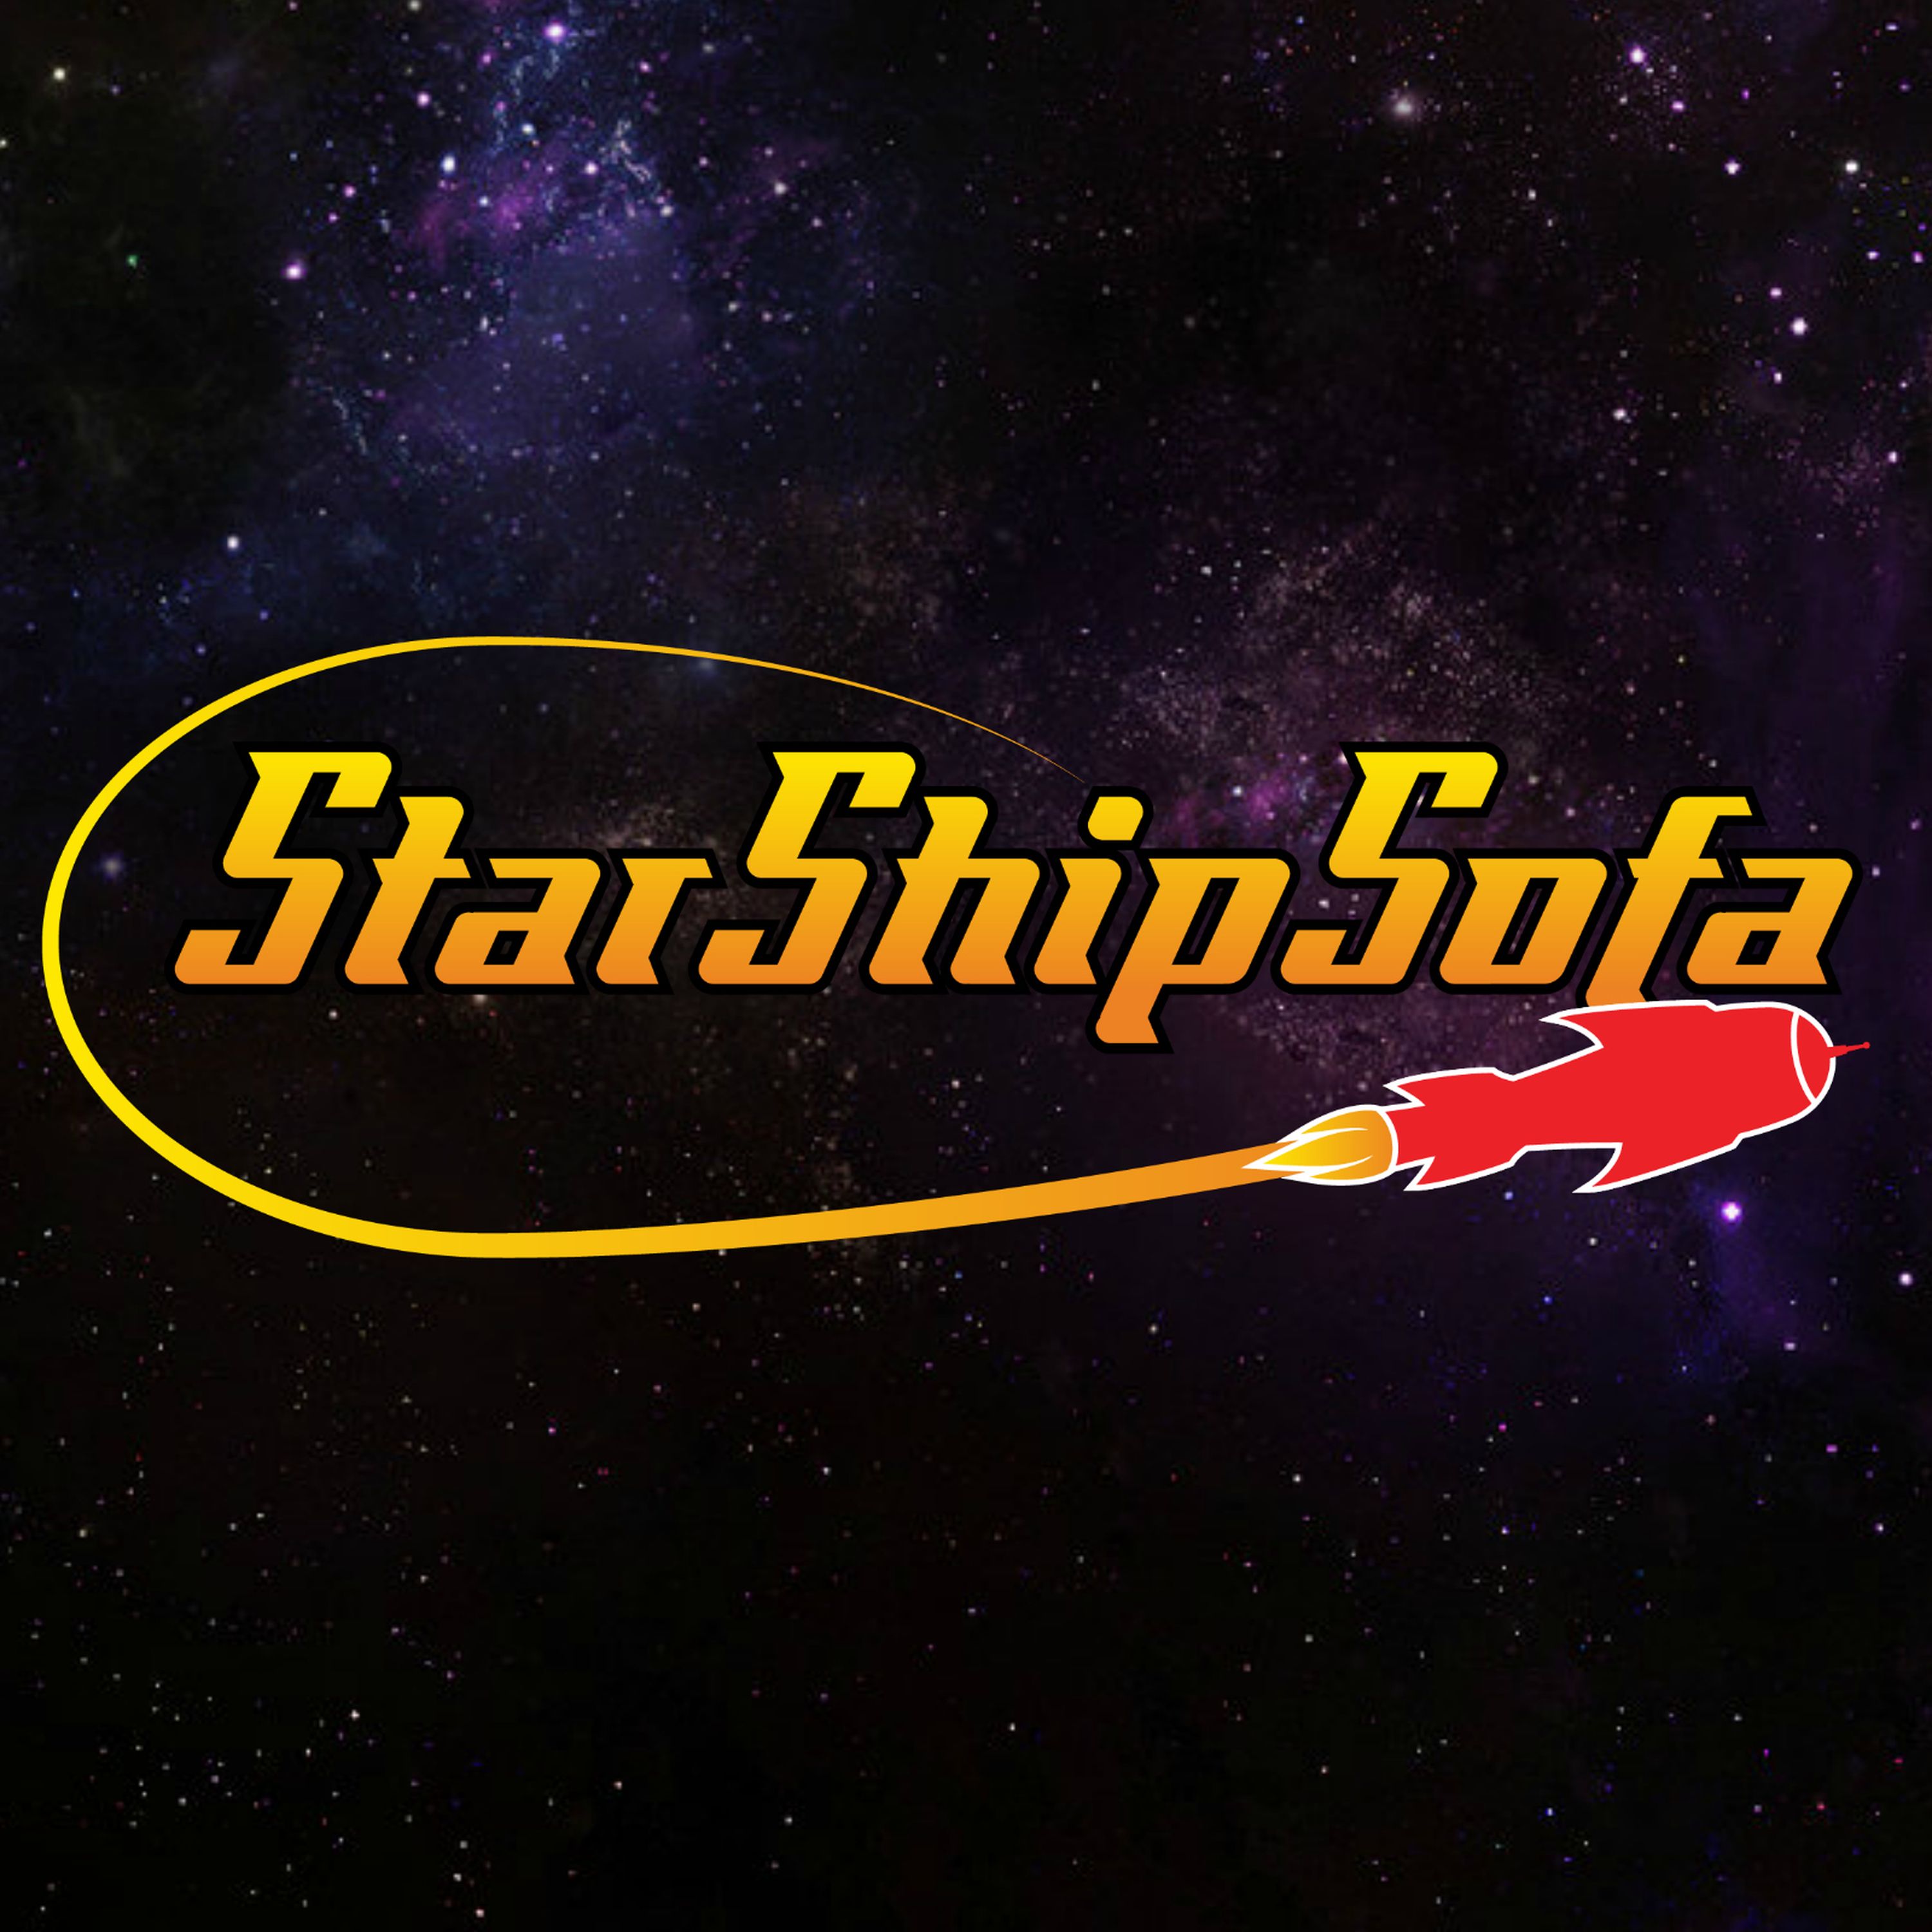 StarShipSofa No 652 Eve Tushnet